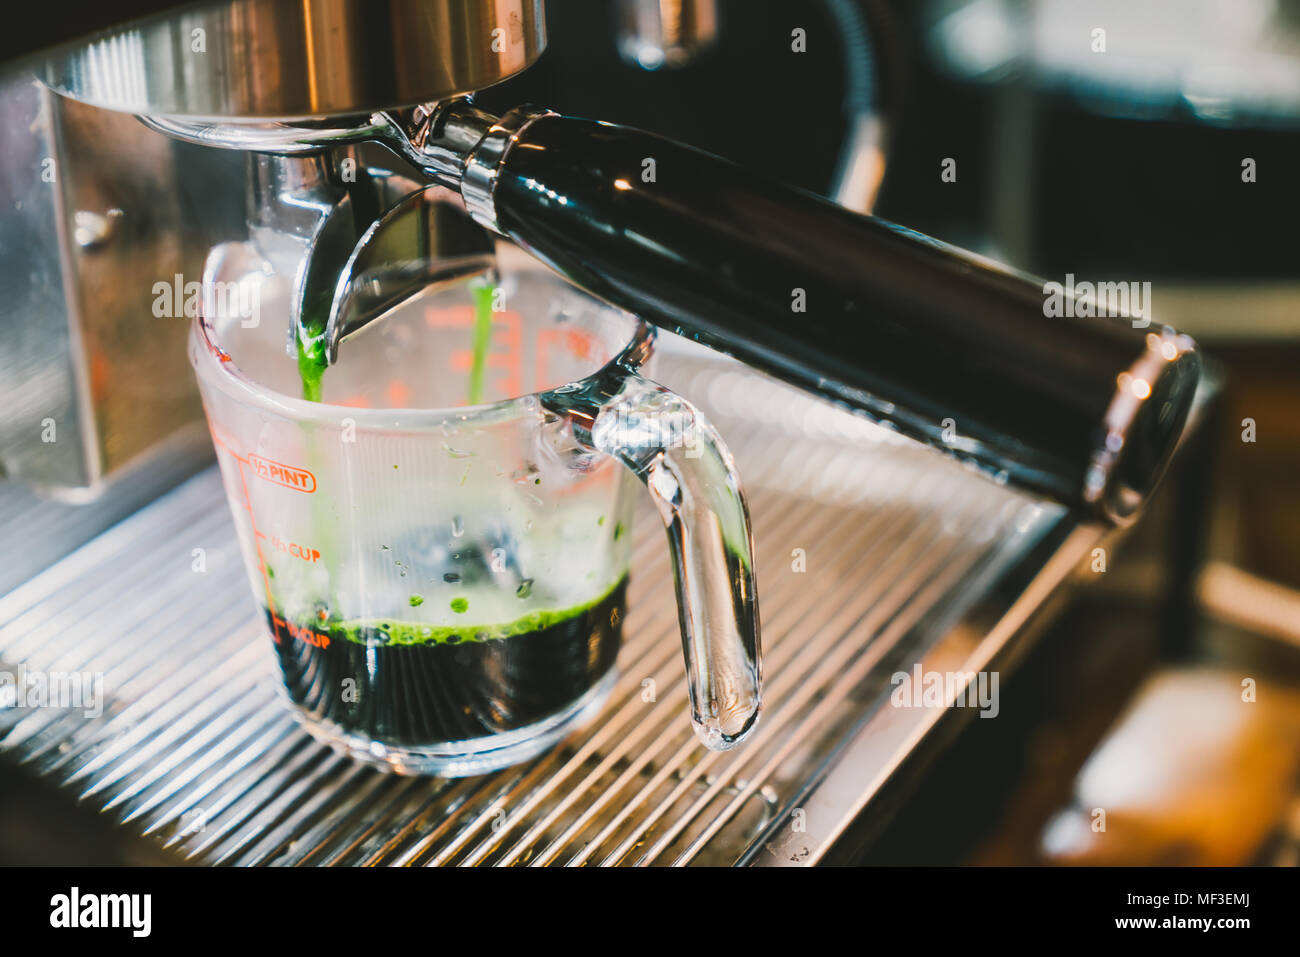 Barista rendendo caldo tè verde con macchina per il caffè macchina, close-up sulla scala di misura in vetro. Cafe lifestyle, cibo e bevande small business concept Foto Stock